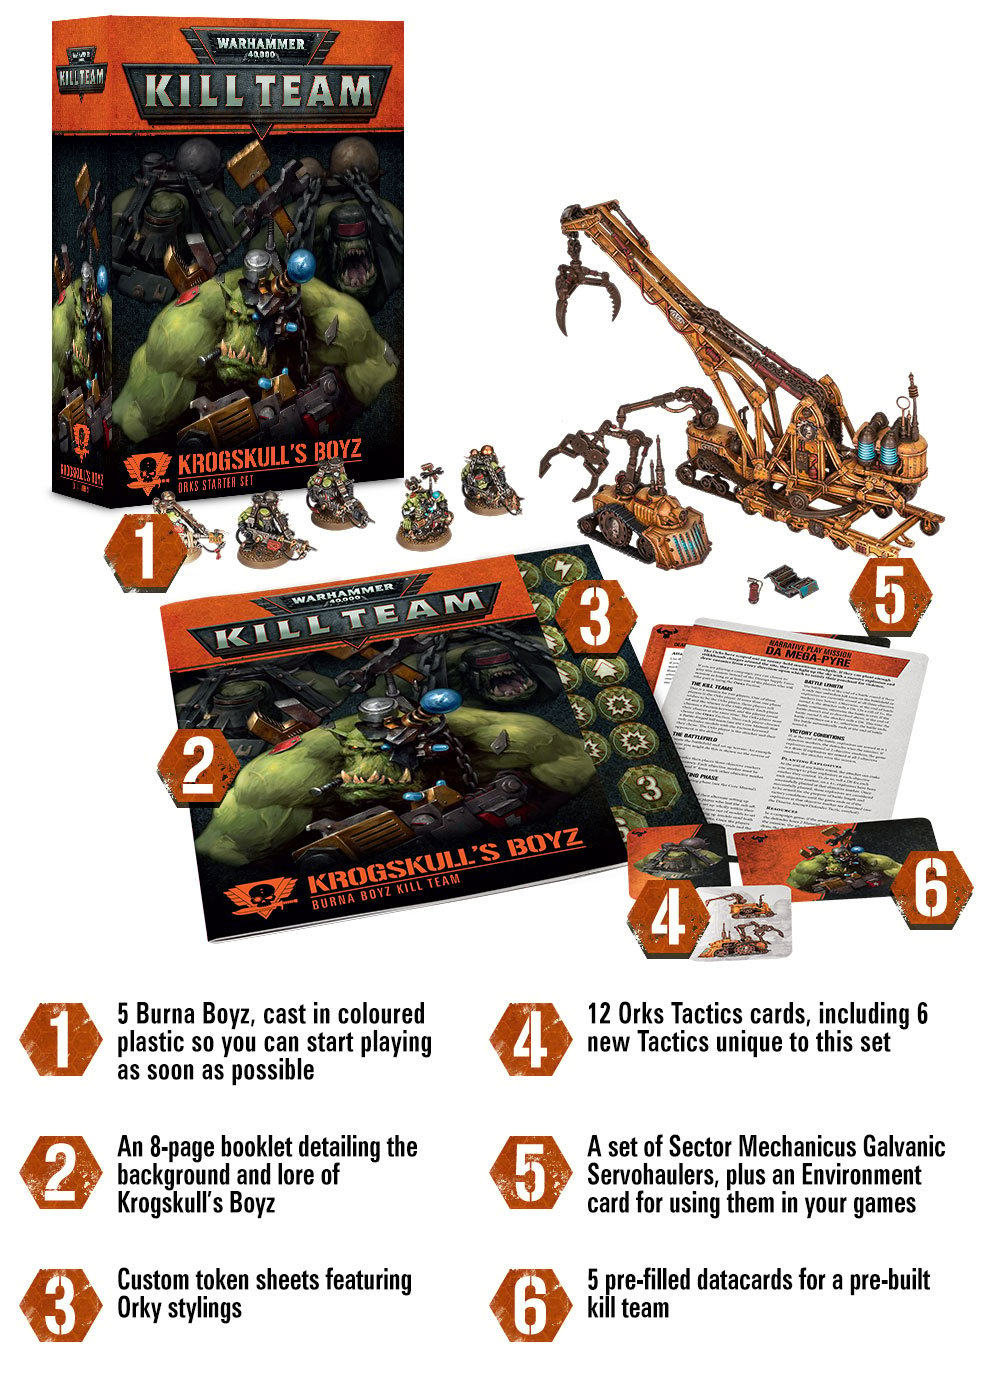 Kill team v2 (+genestealer cult) KrogskullsBoyz-box-set-Infographic